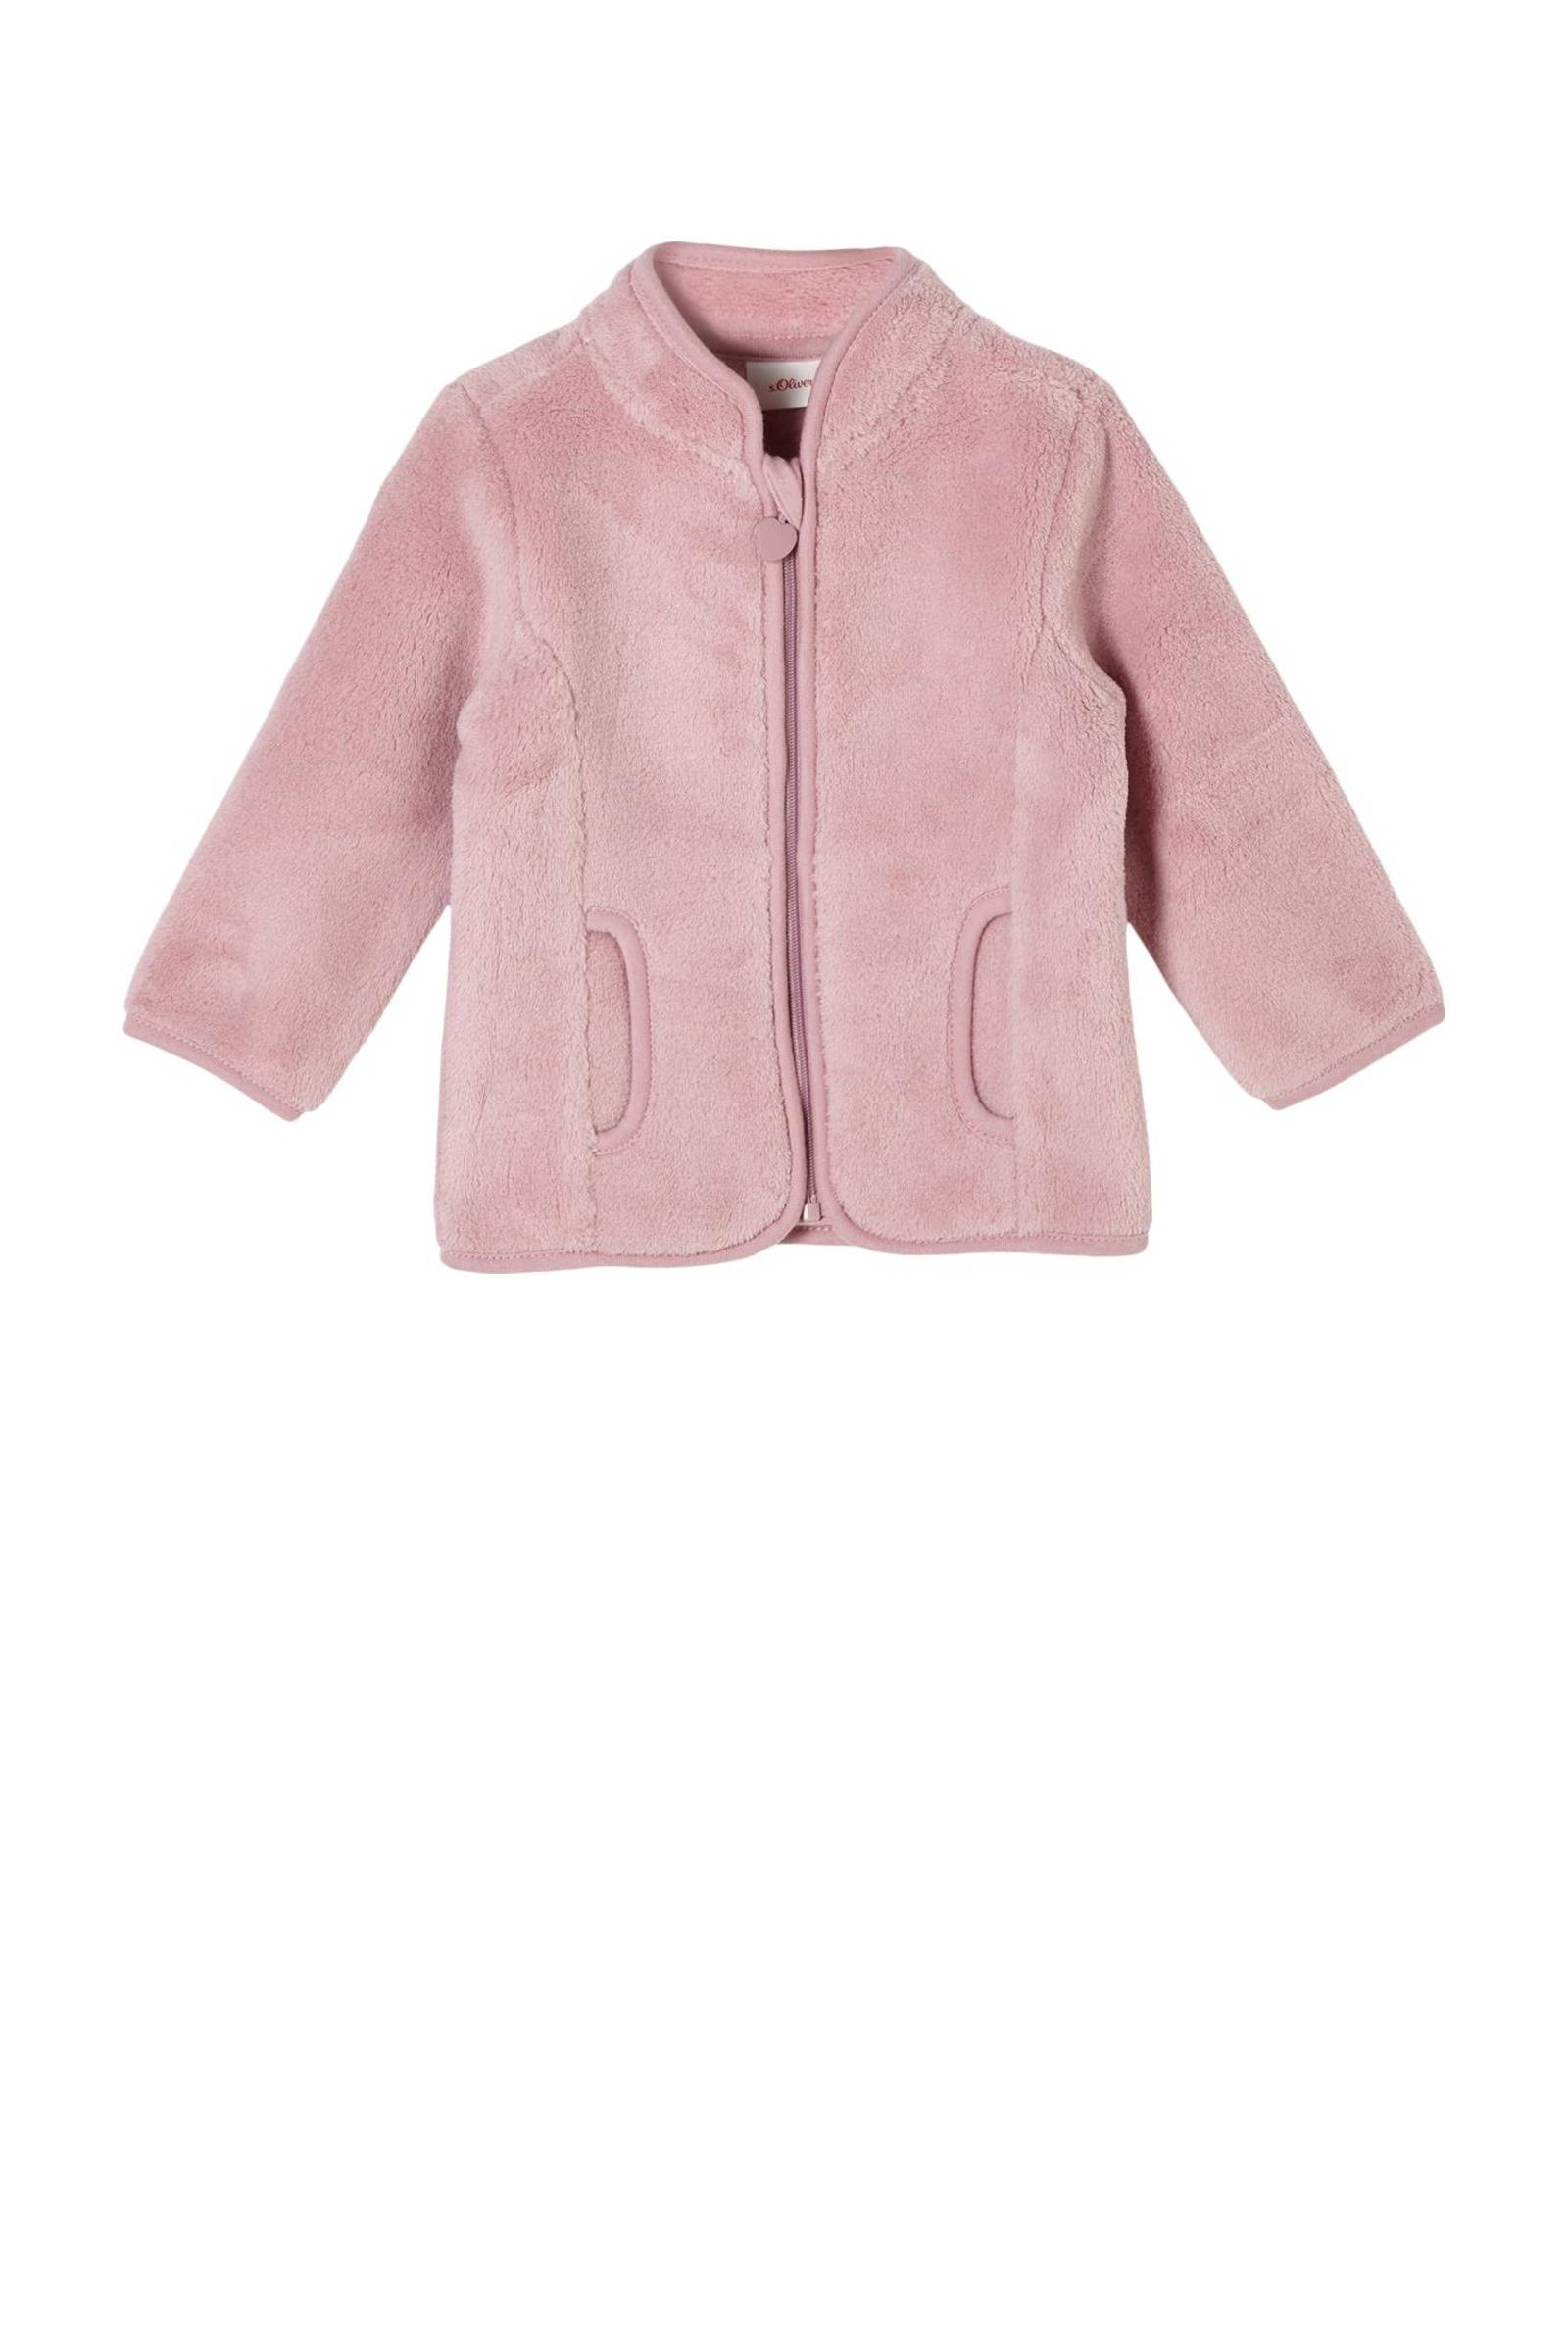 S.Oliver s. Olive r Pluche jas light roze online kopen